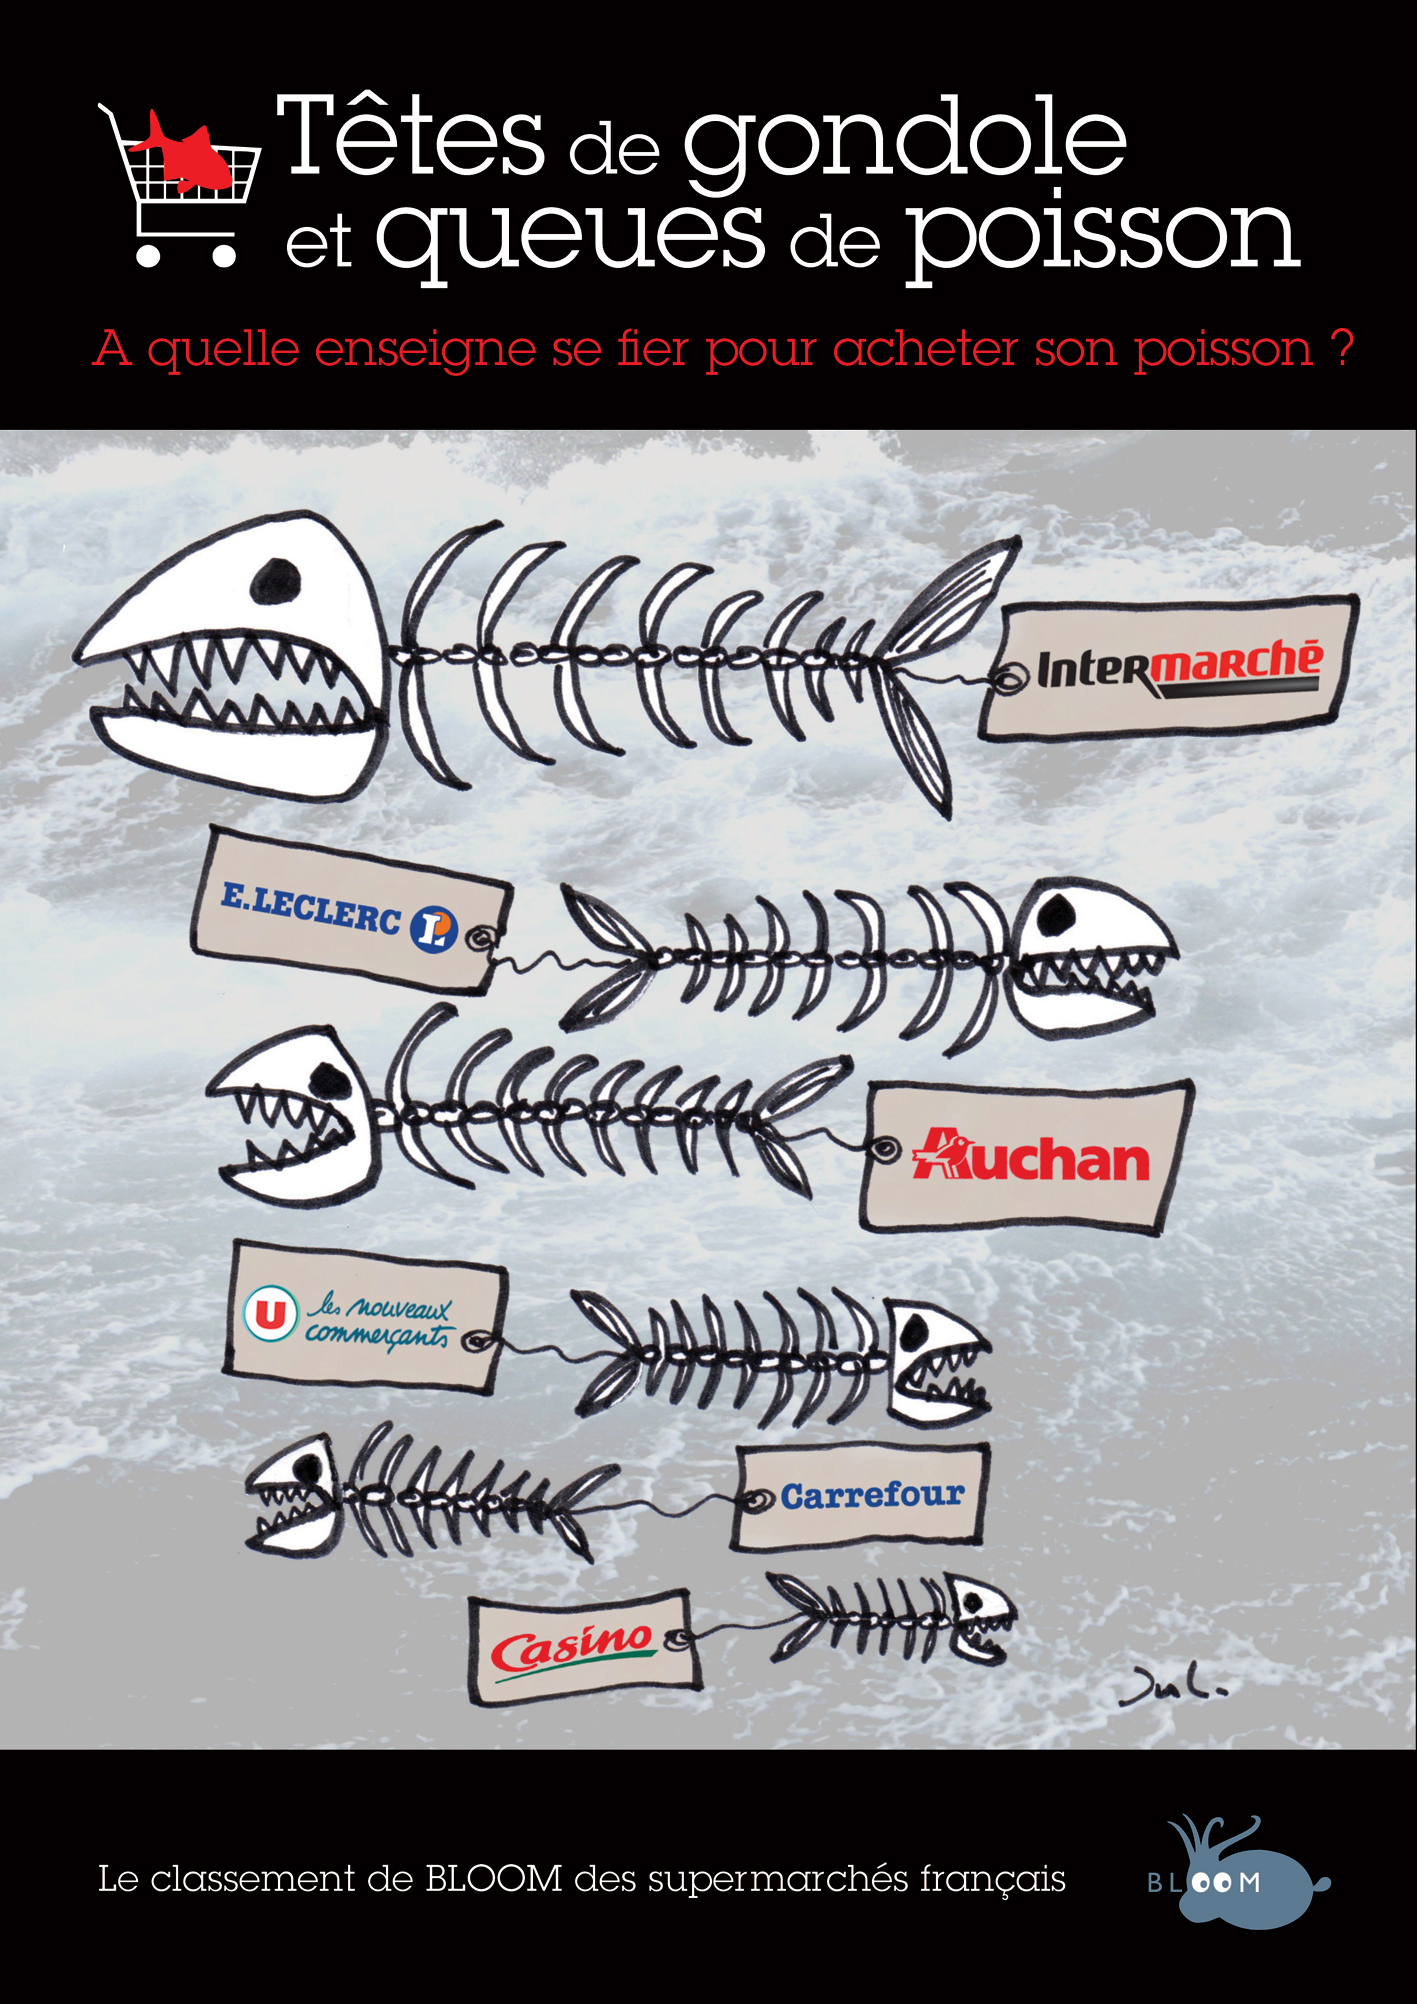 Têtes de gondole et queues de poisson - A quelle enseigne se fier pour acheter son poisson ? Réponse avec le classement BLOOM des supermarchés français